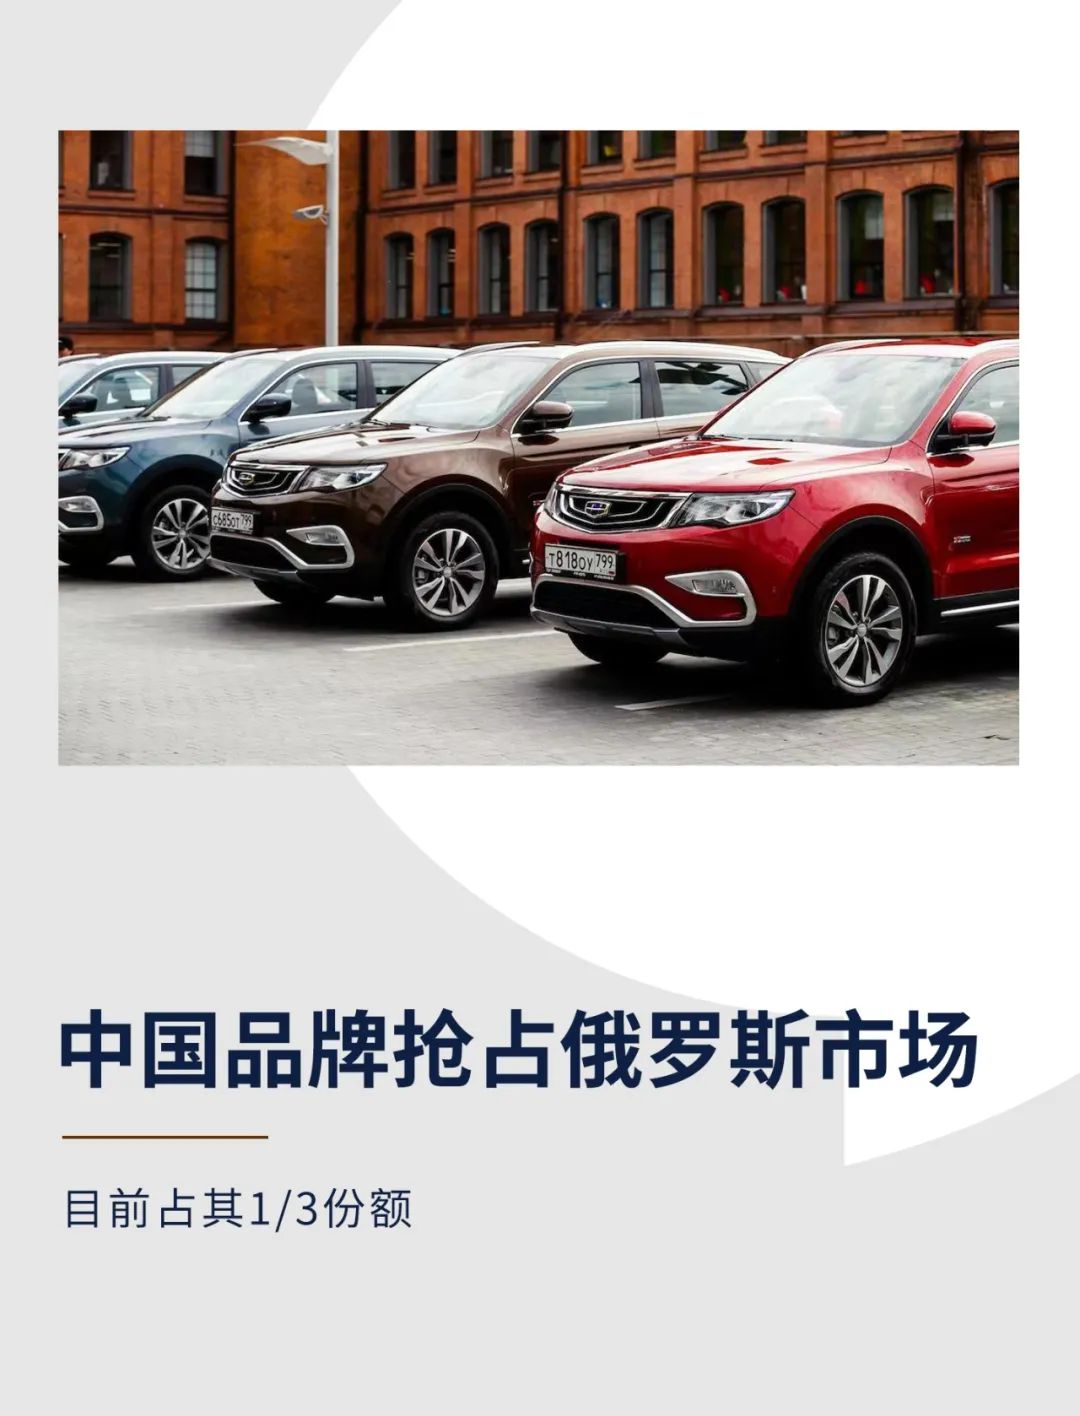 中国品牌抢占俄罗斯汽车市场